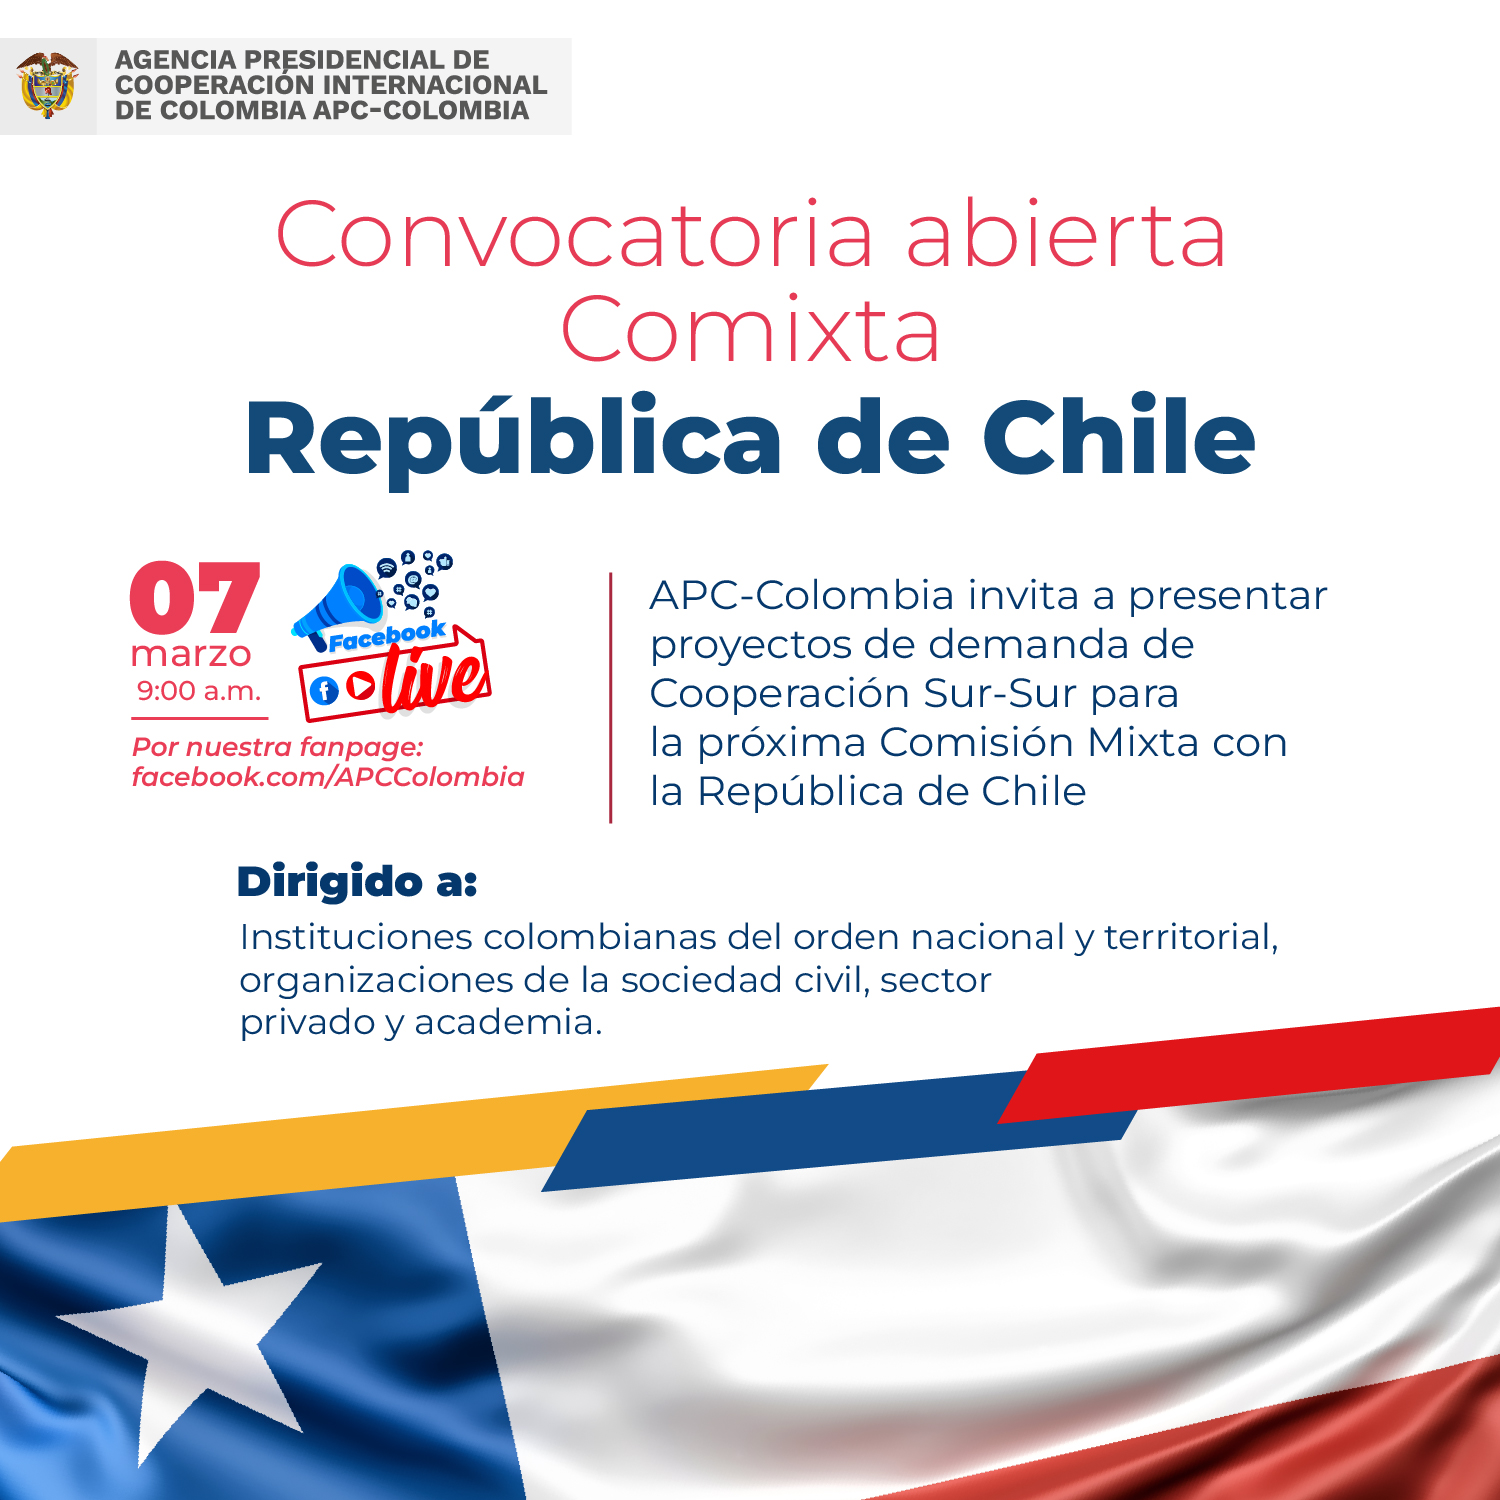 Inmagen invitando a participar en la convocatoria a la Comixta entre Colombia y Chile. Además a participar en el Facebook Live para resolver dudas el 07 de marzo a las nueve de la mañana